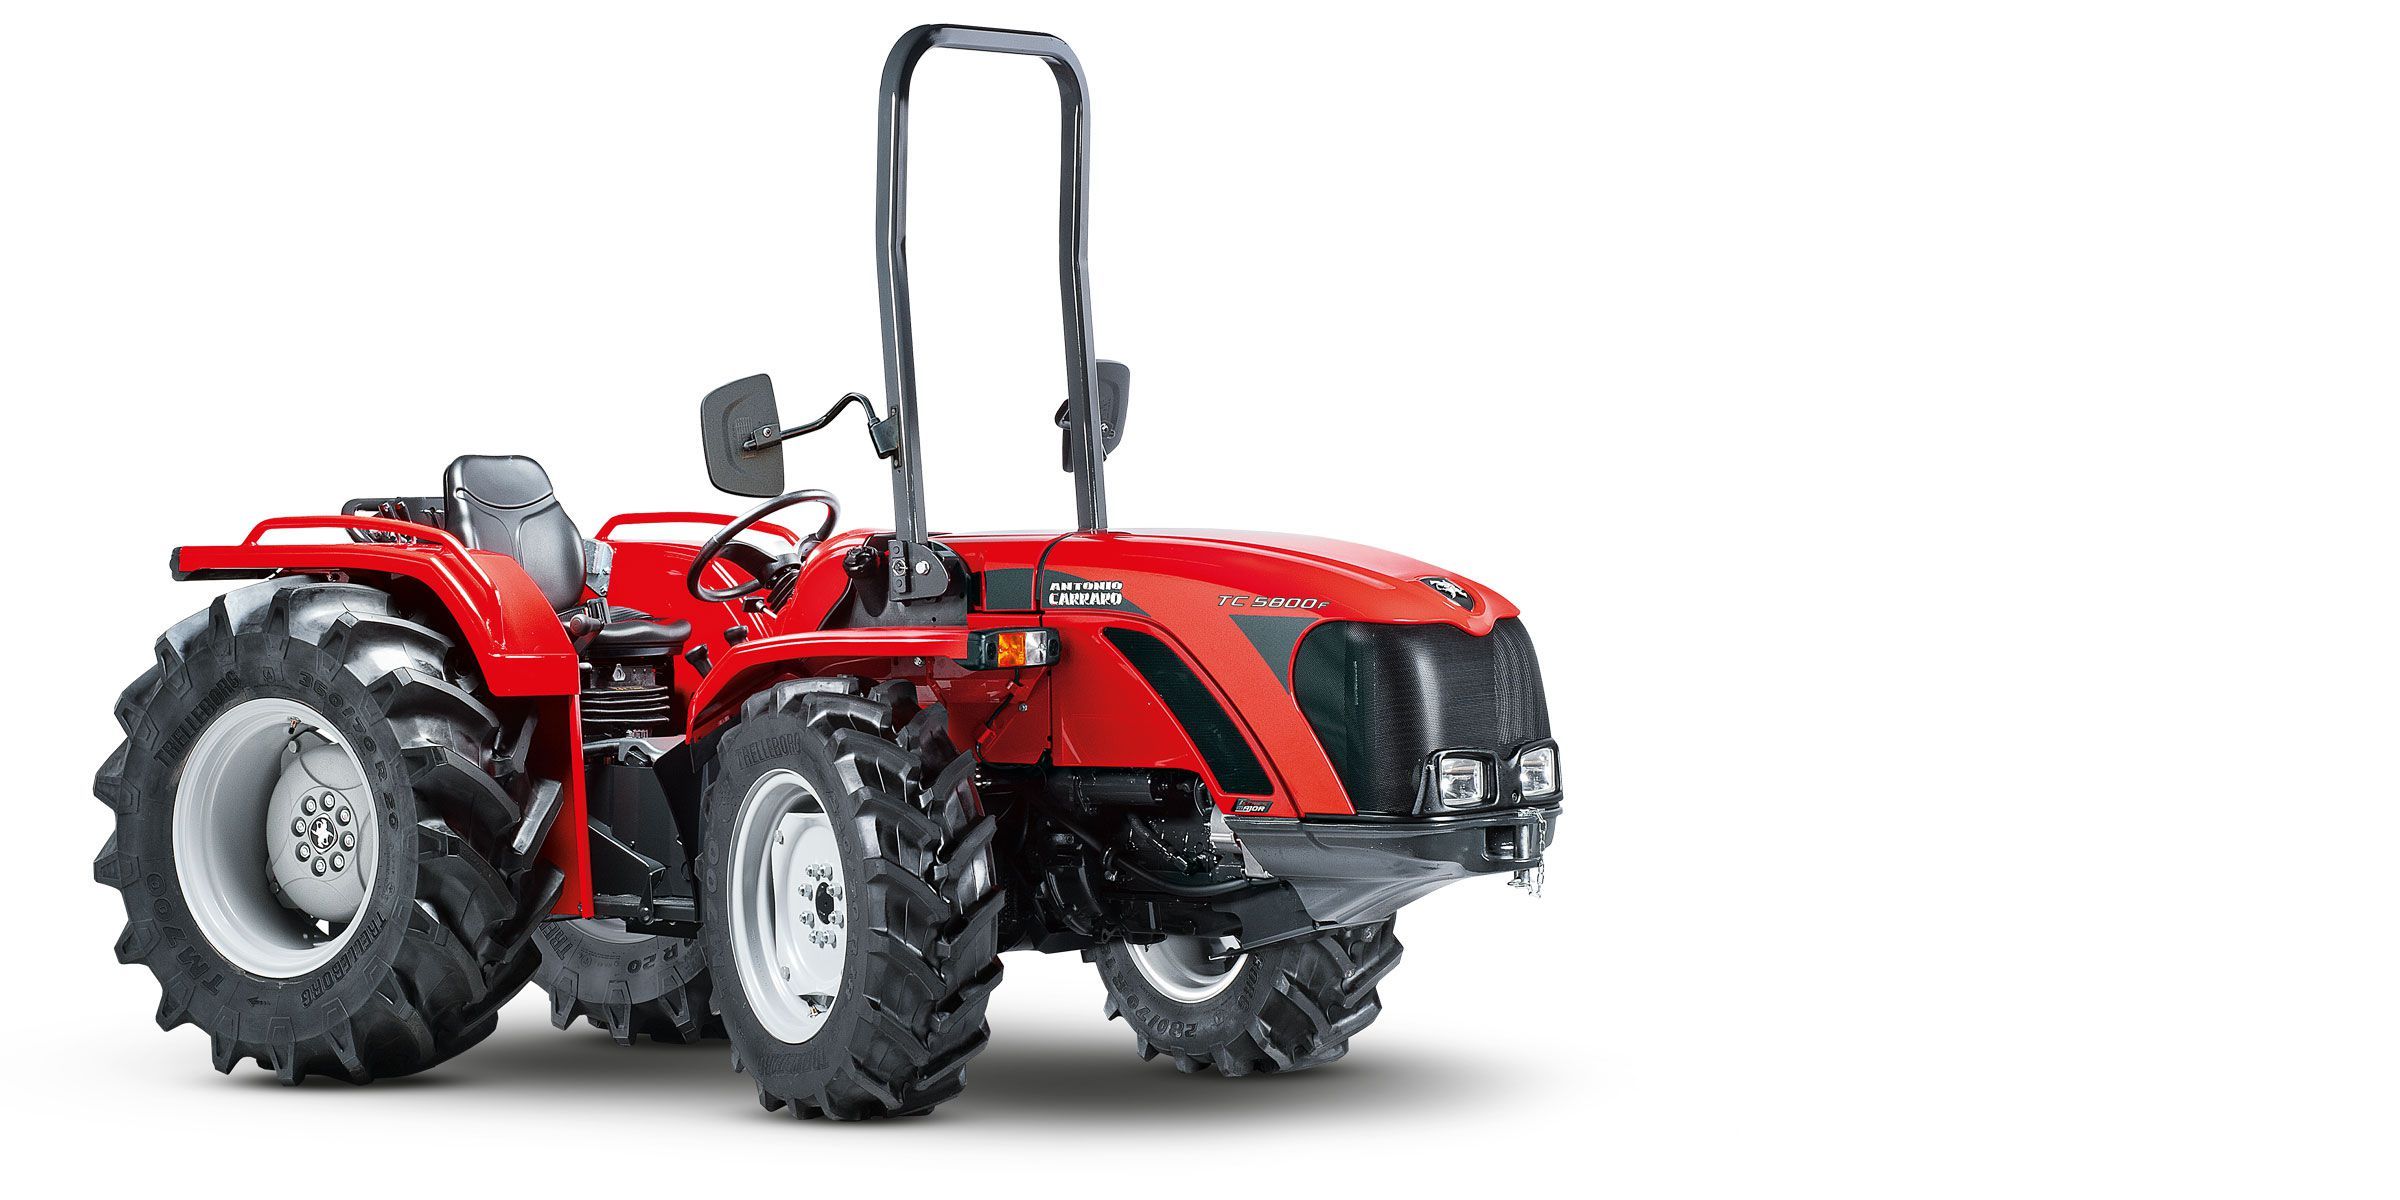 Tc 5800 f - tracteur agricole - antonio carraro - capacité 2200 kg_0